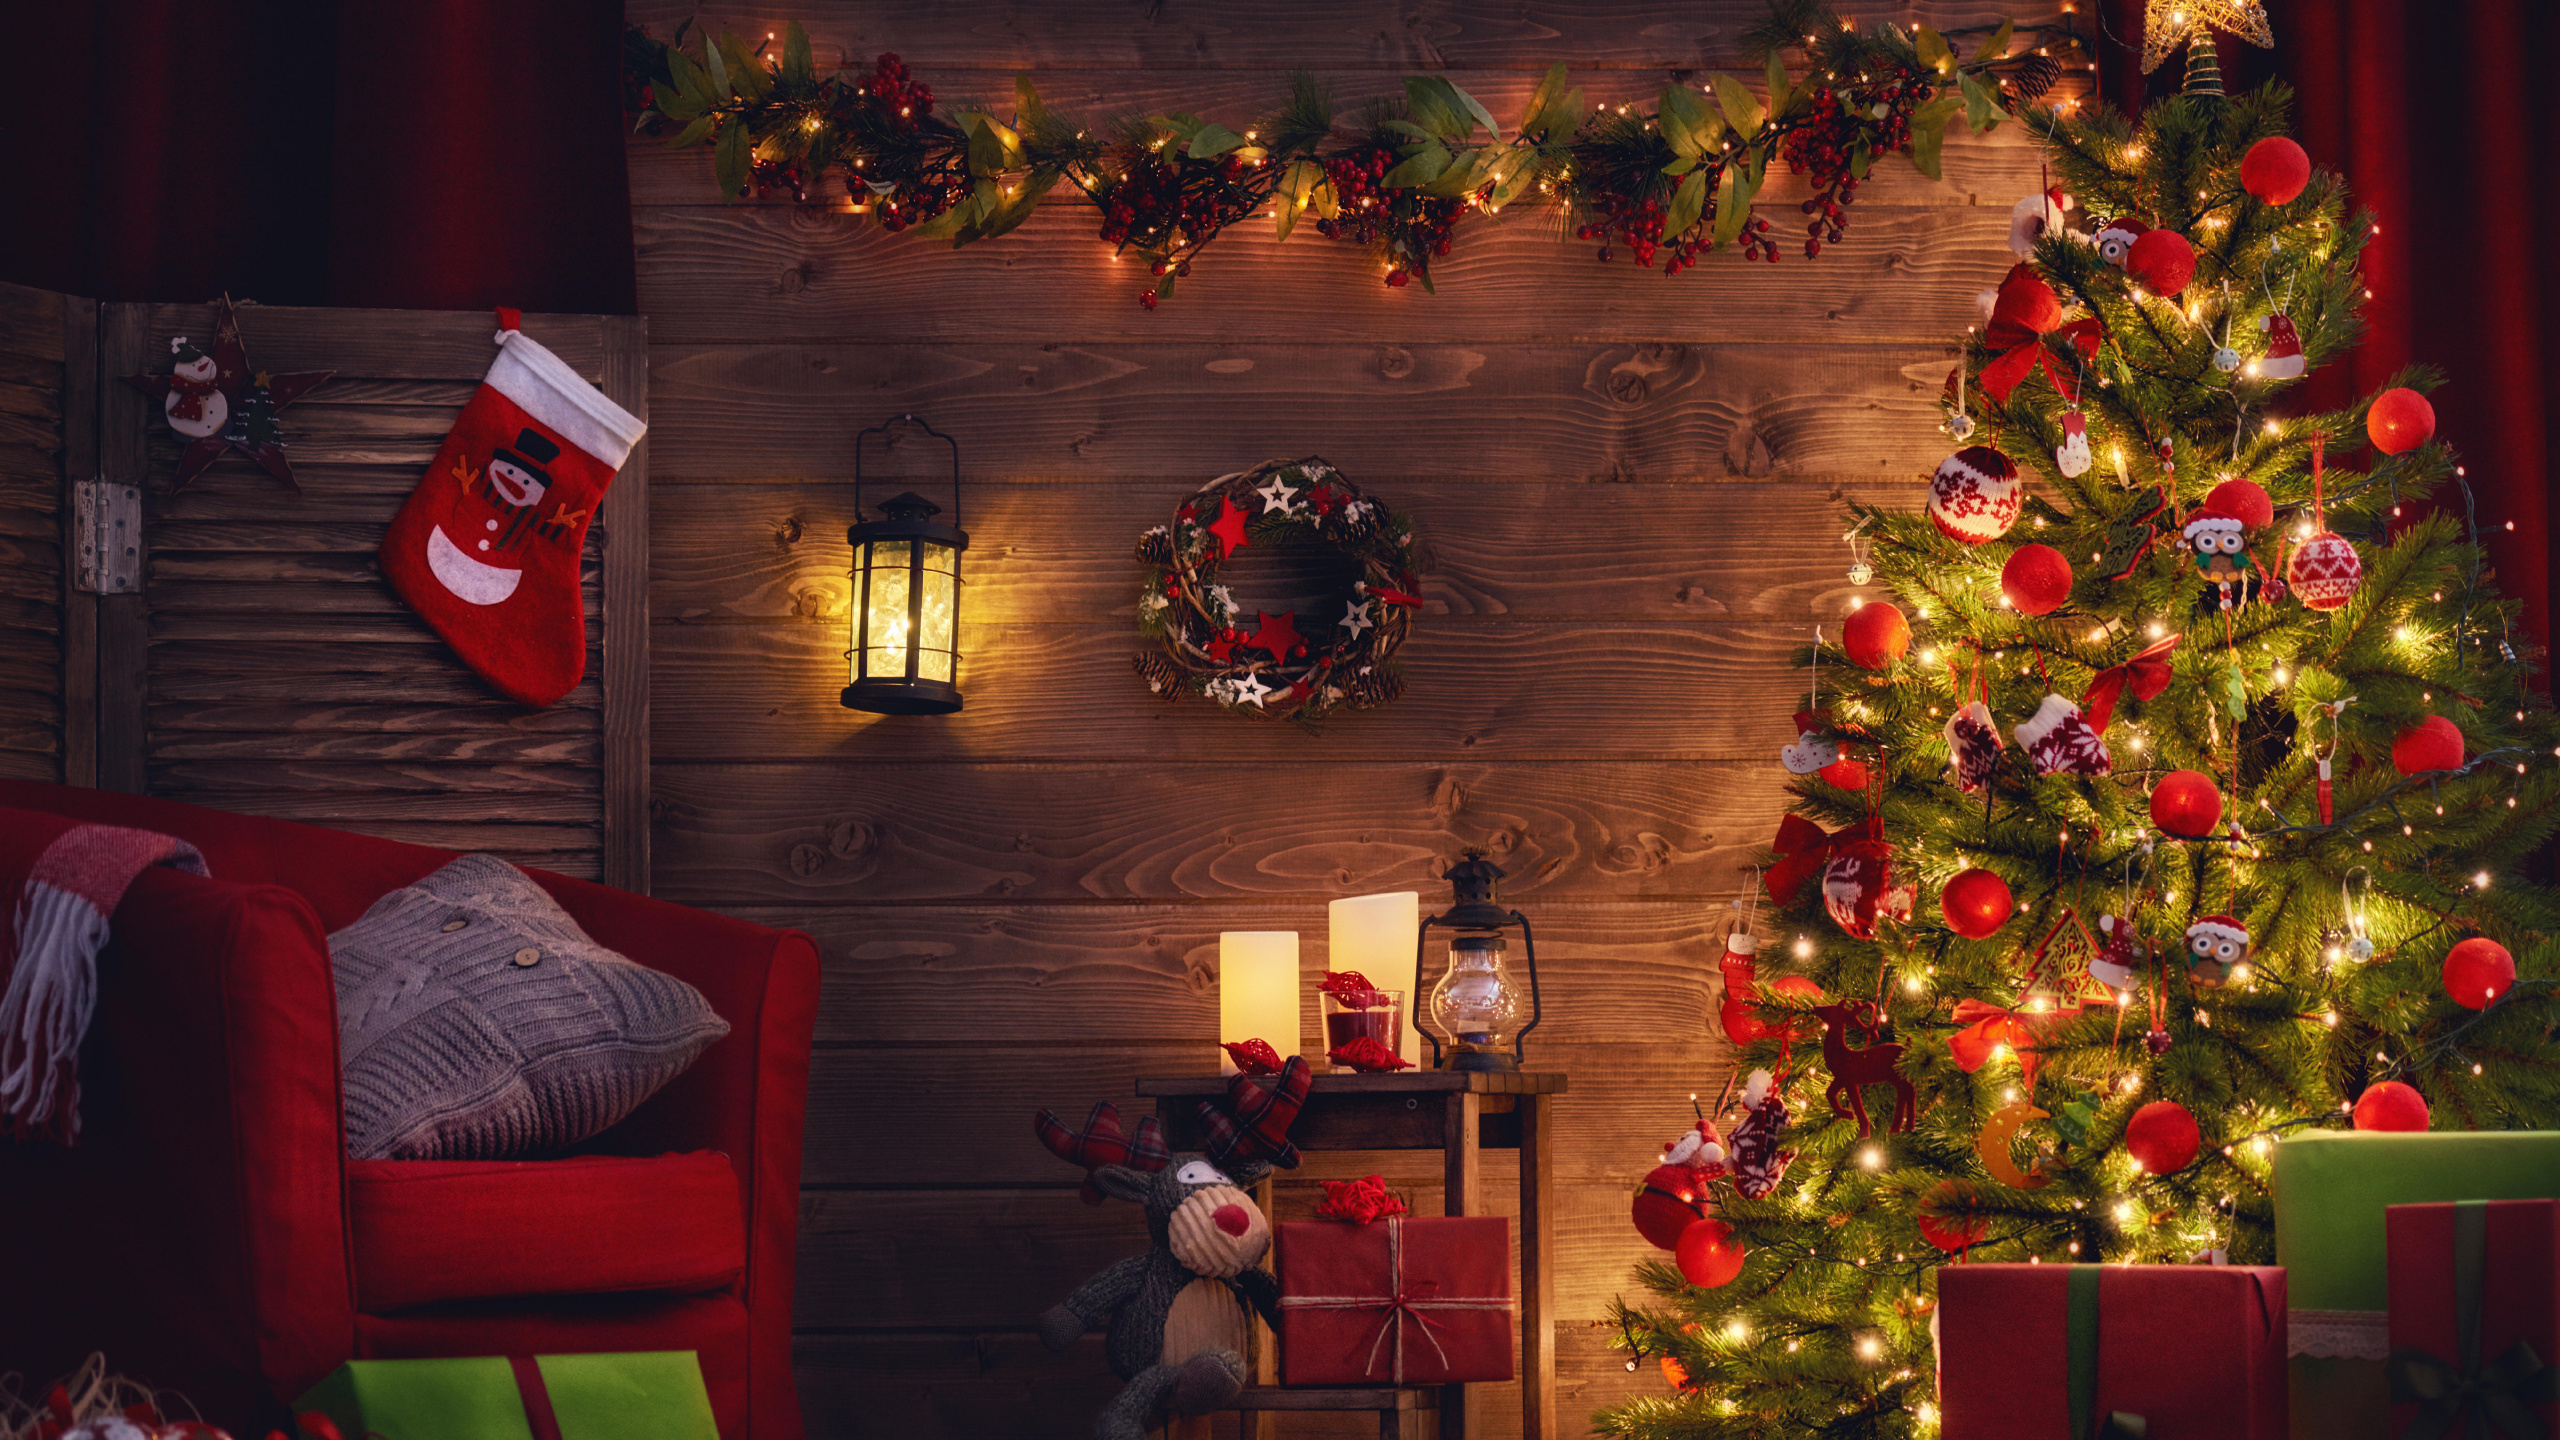 Weihnachtsbaum, Weihnachten, Weihnachtsdekoration, Weihnachtsbeleuchtung, Hölzerner Weihnachts-Adventskalender. Wallpaper in 2560x1440 Resolution